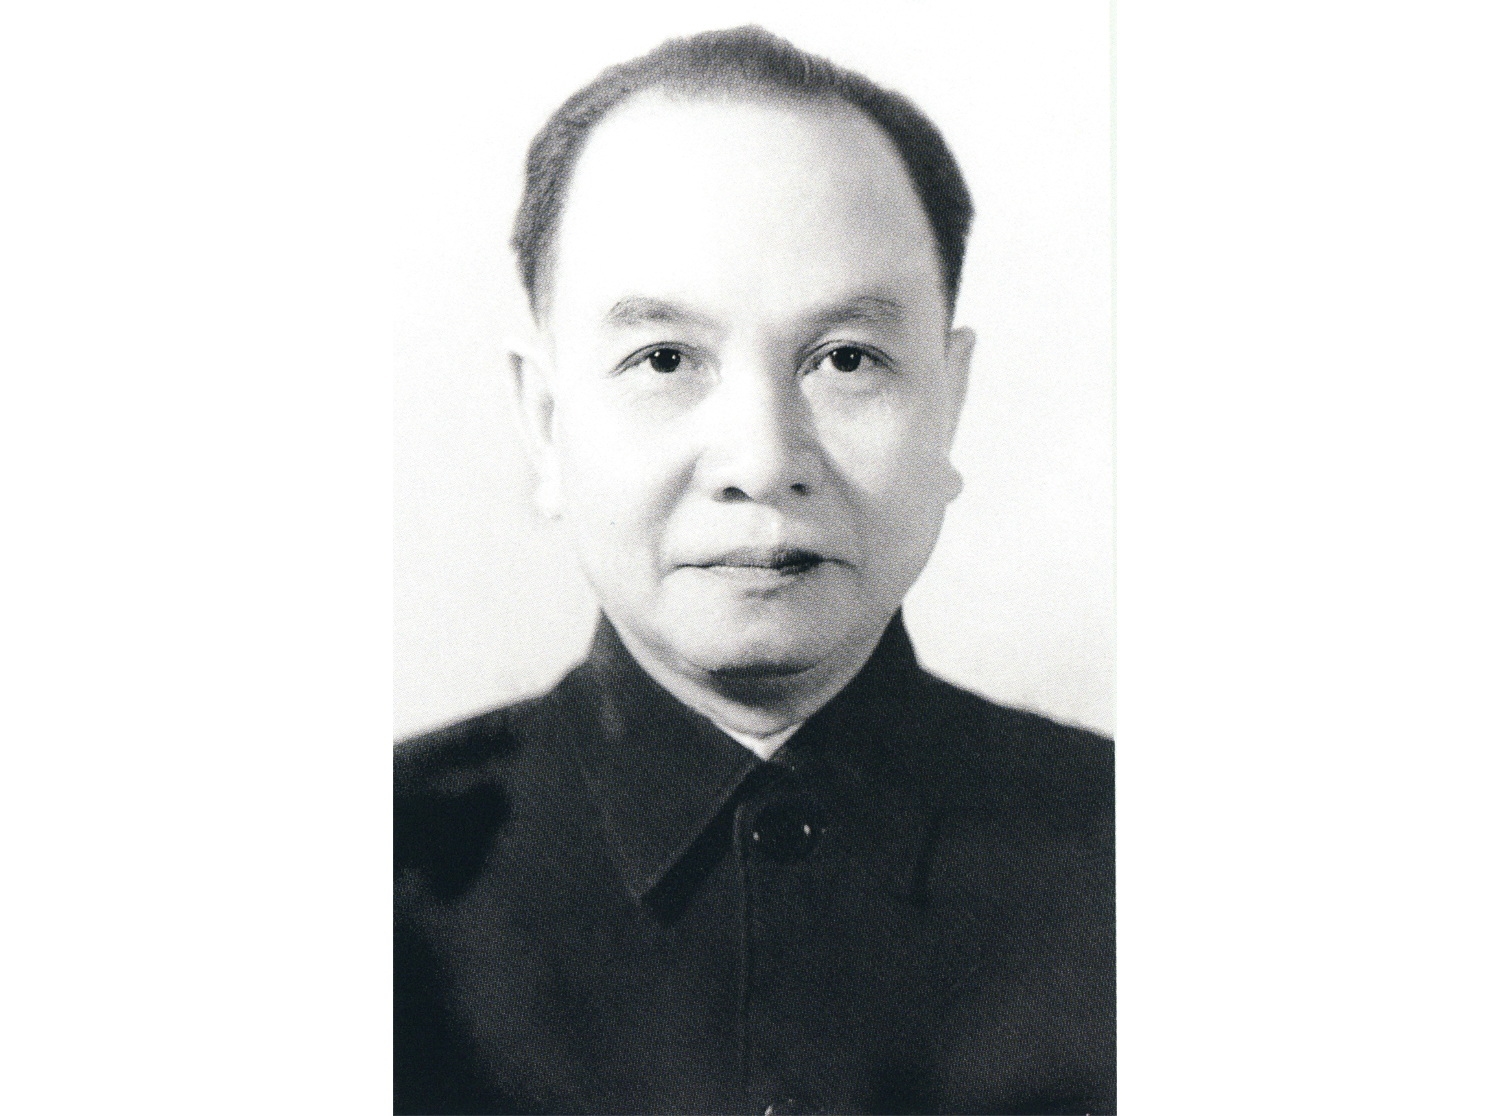 Tổng Bí thư Trường Chinh – Nhà lãnh đạo kiệt xuất, một nhân cách lớn của Cách mạng Việt Nam (phần 2)